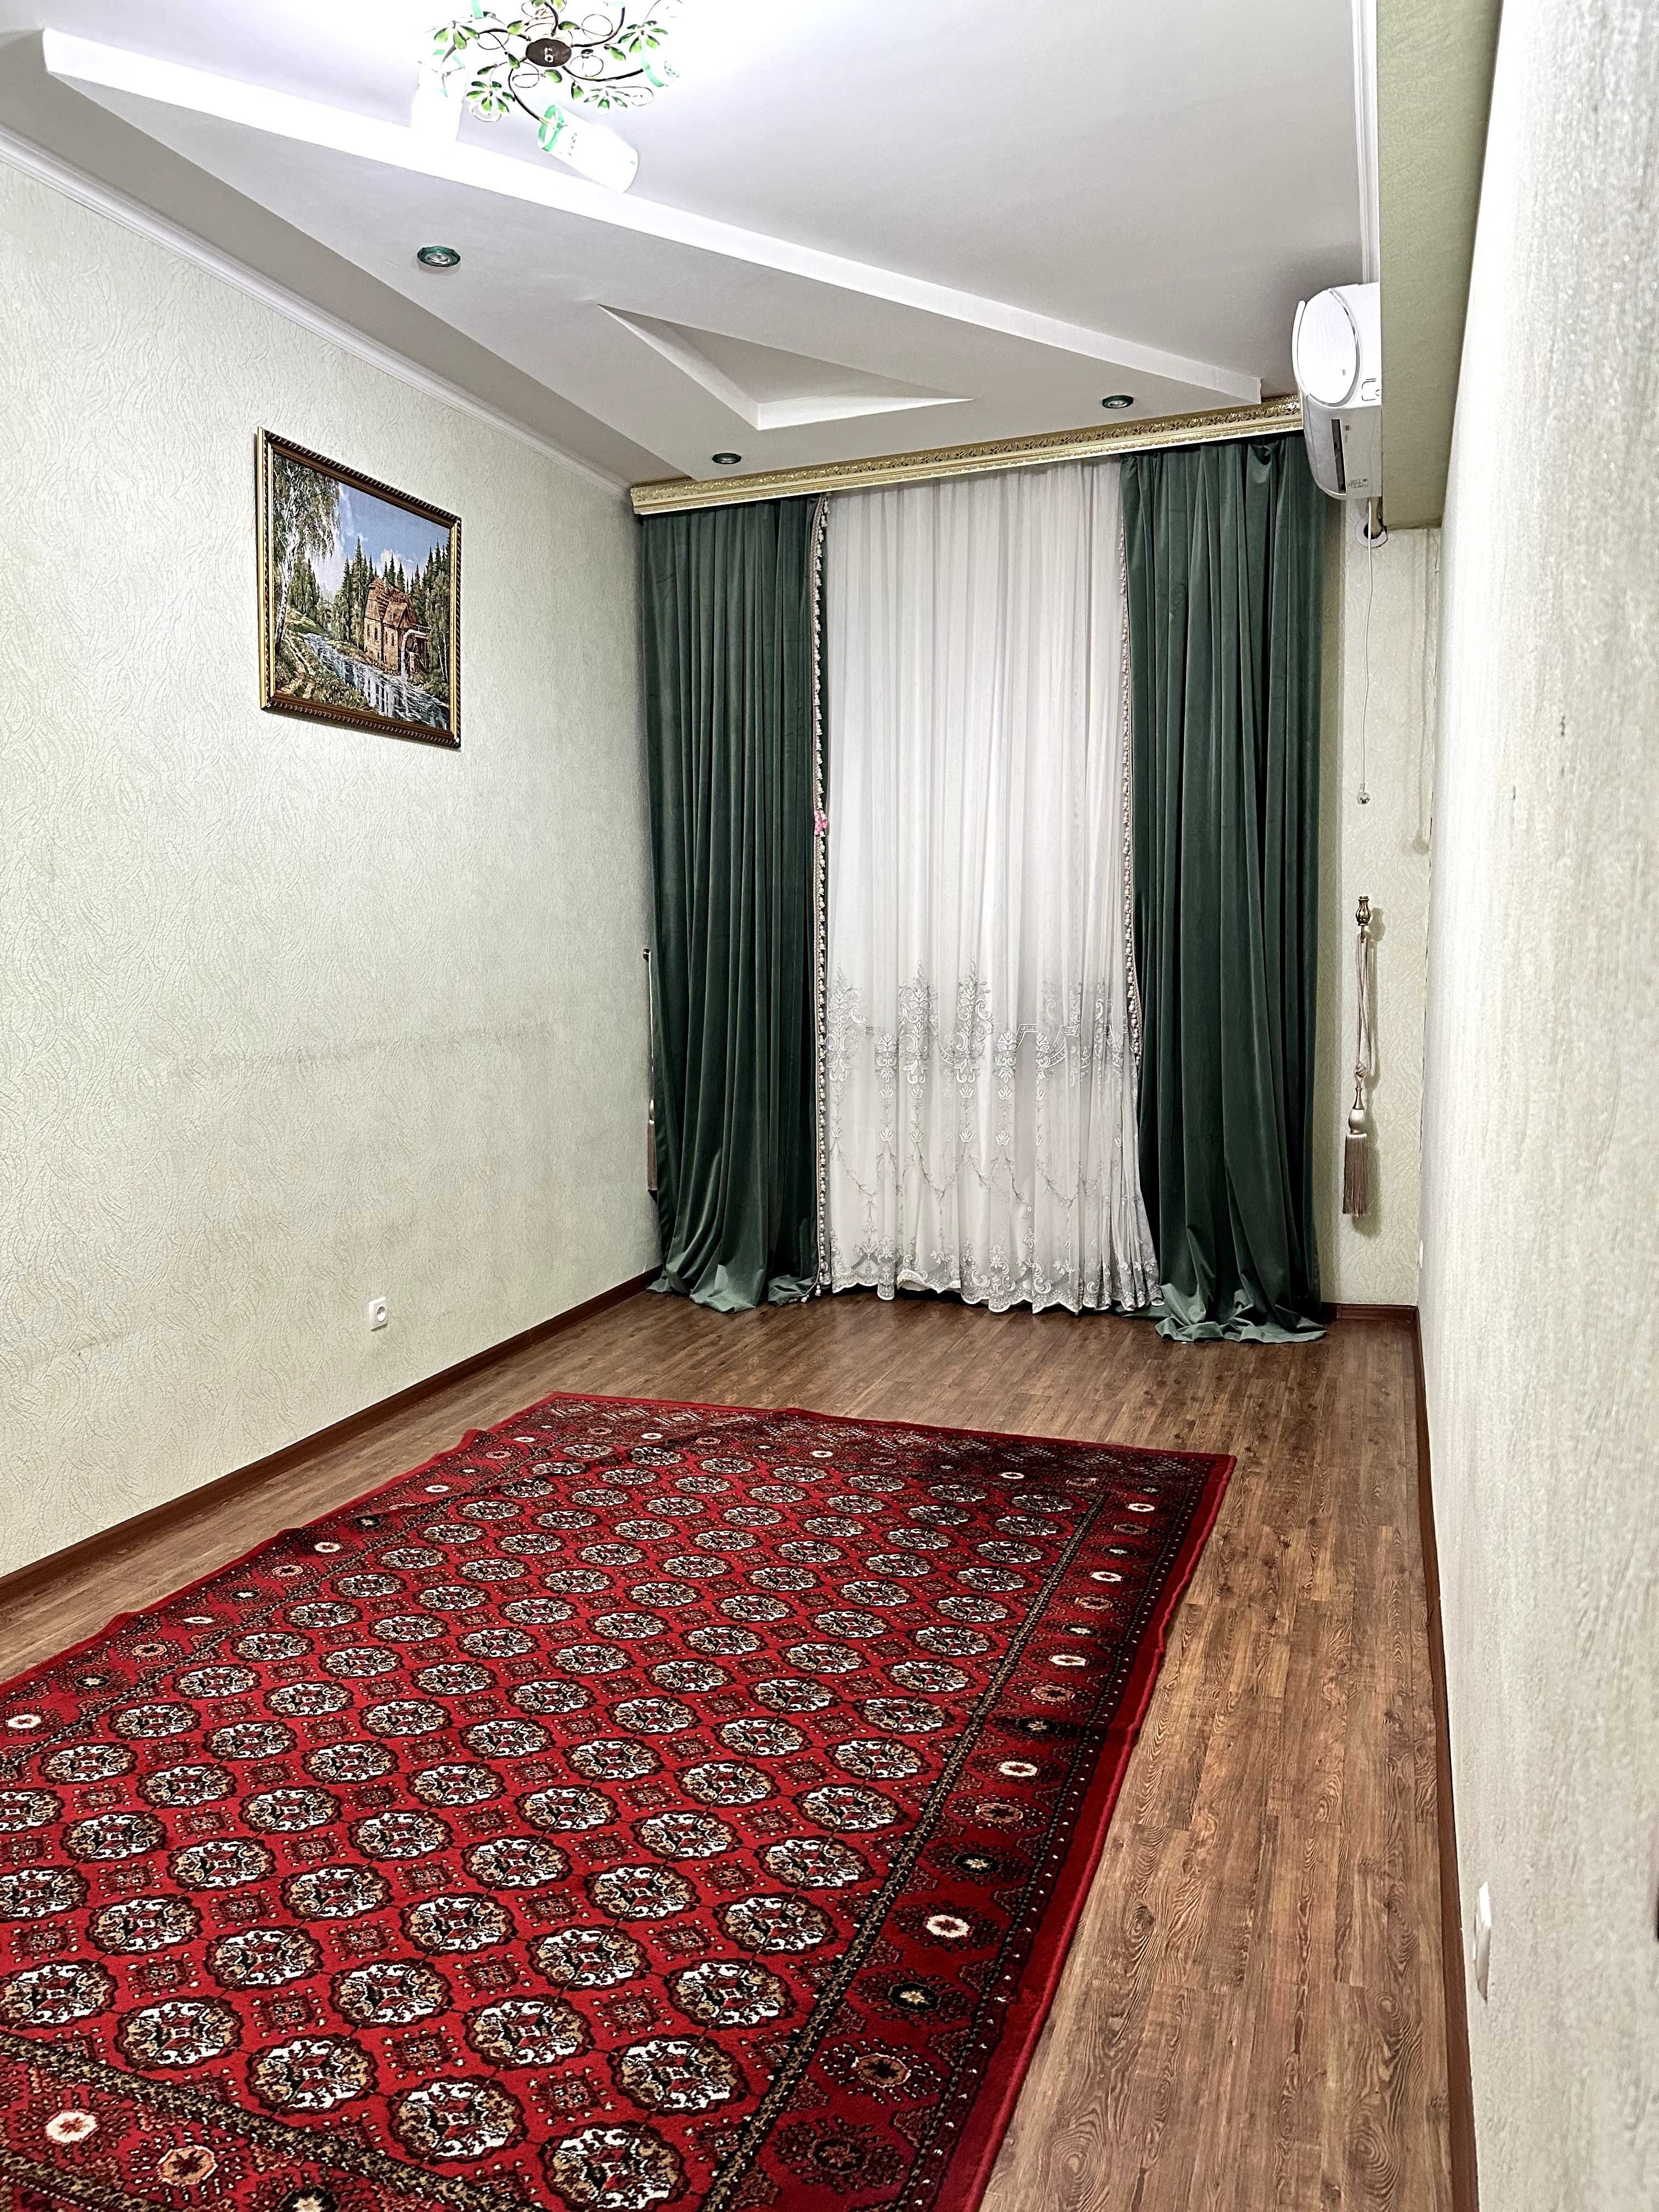 Аренда квартиры в центре, (рядом Tashkent city) 3х кв., 104 кв.м.